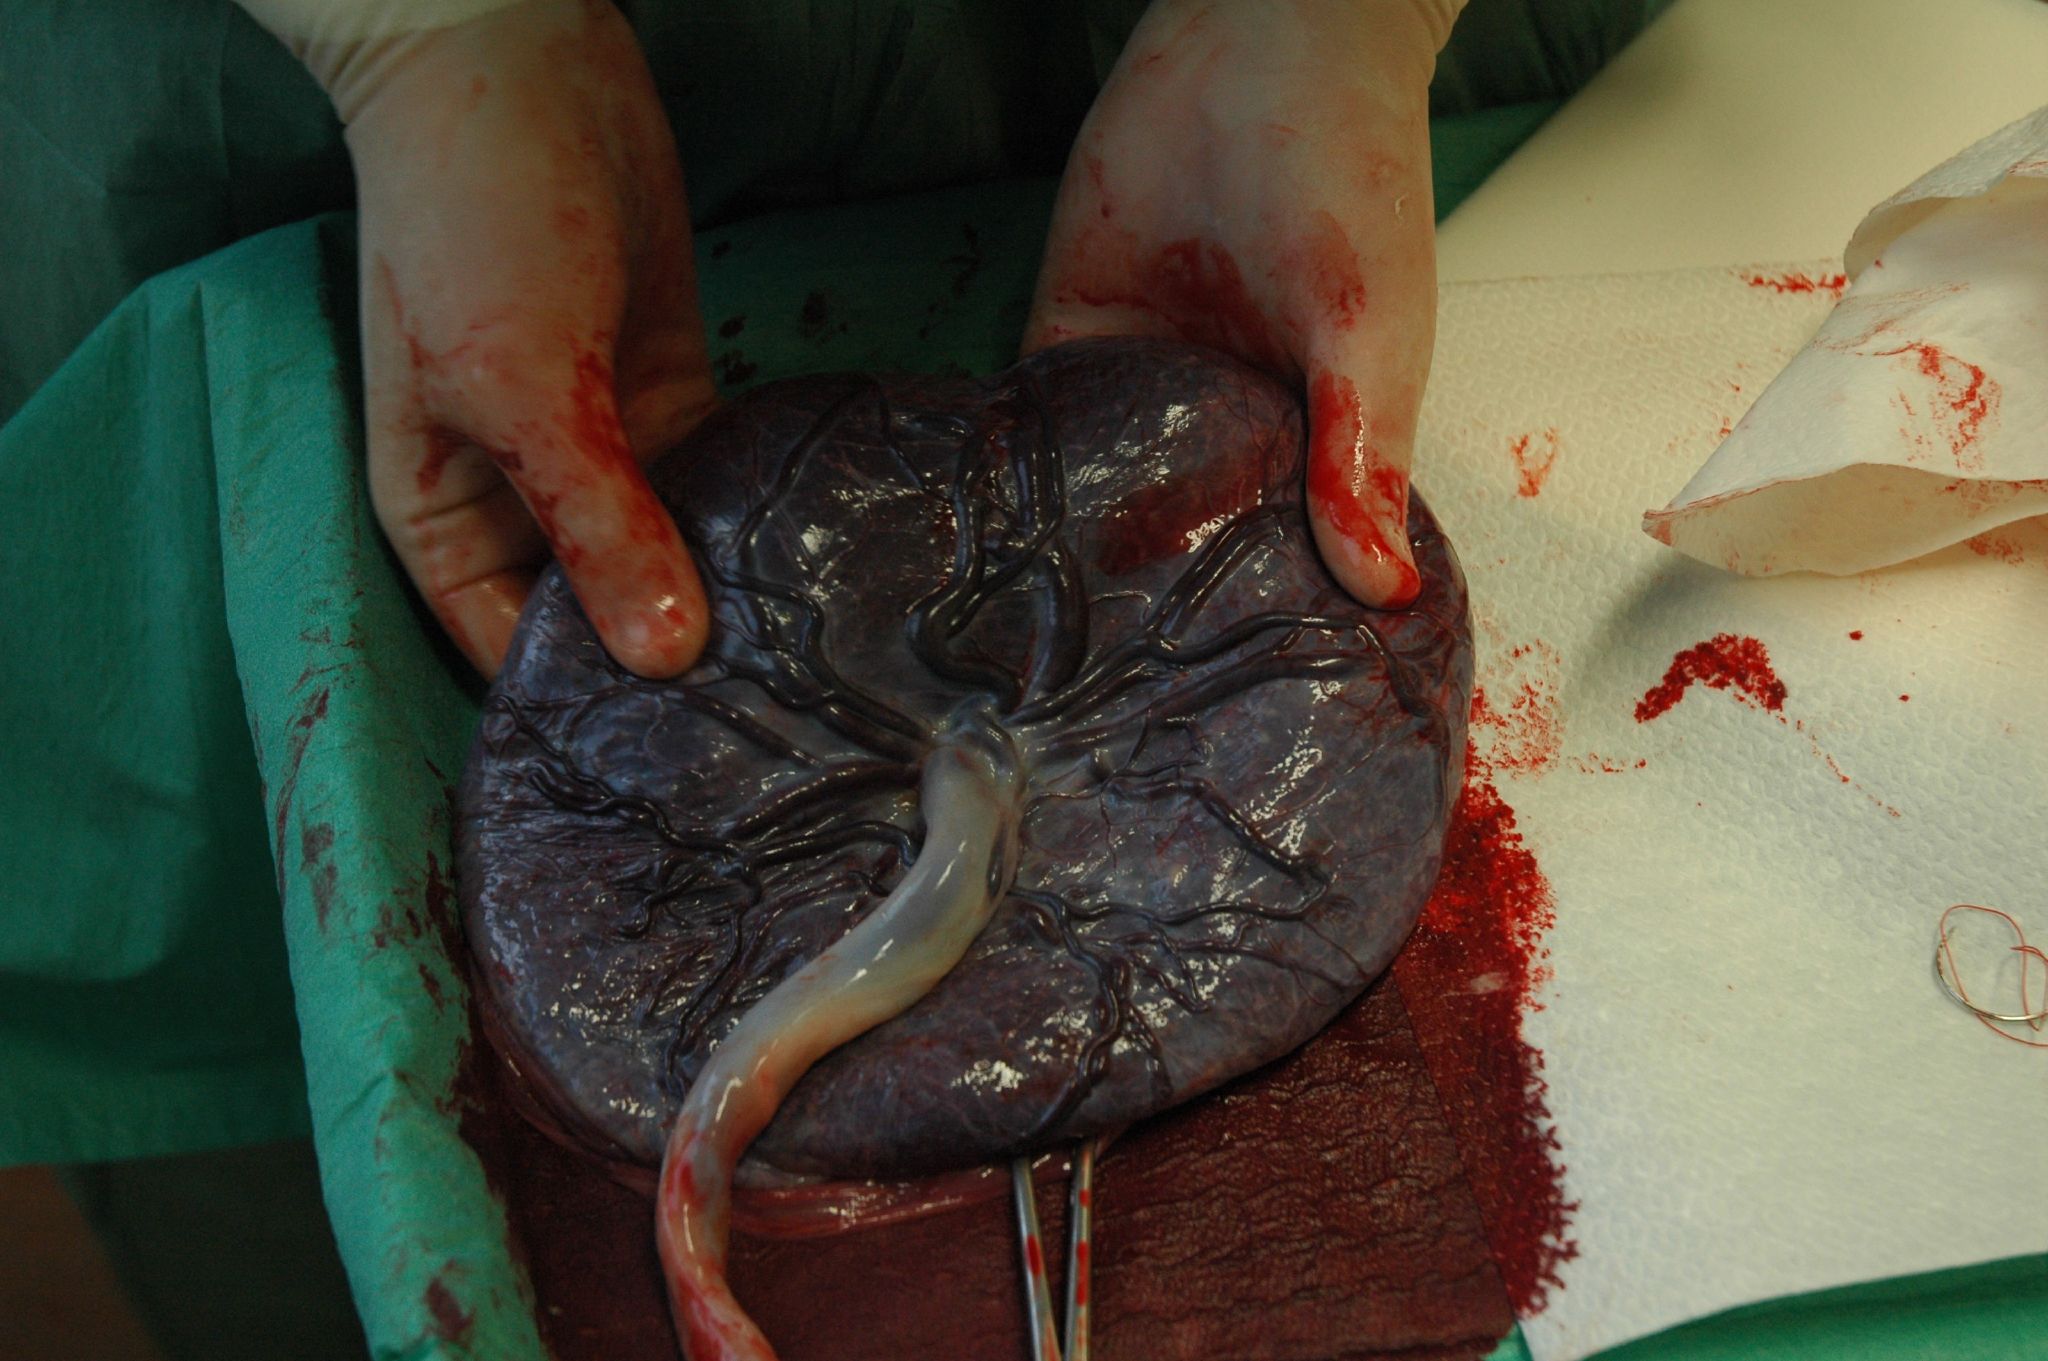 placenta-image